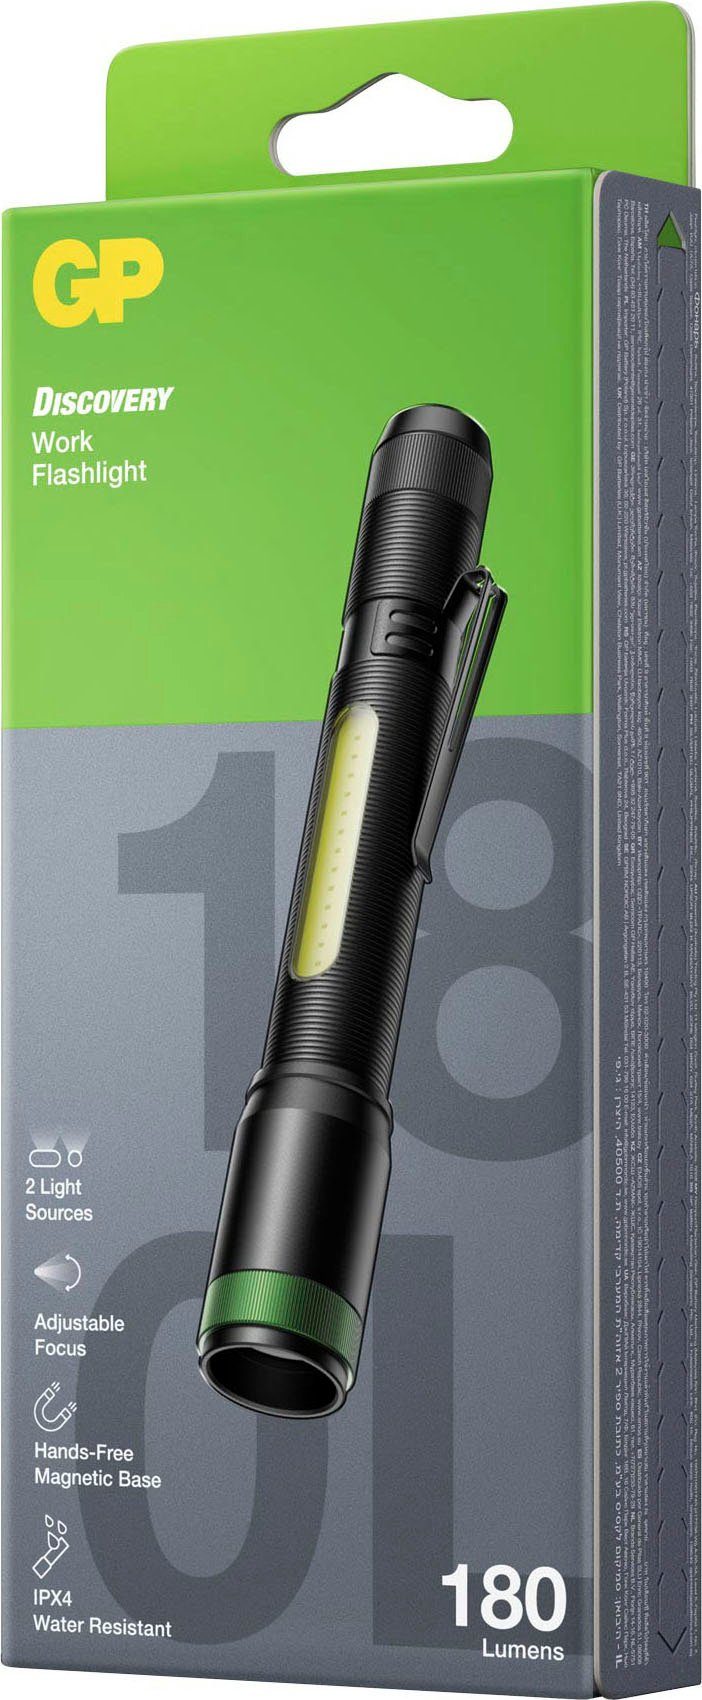 magnetische GP Discovery Taschenlampe Endkappe & C33, seitlich Front 180 Lumen 150 Discovery Batteries Lumen, GP